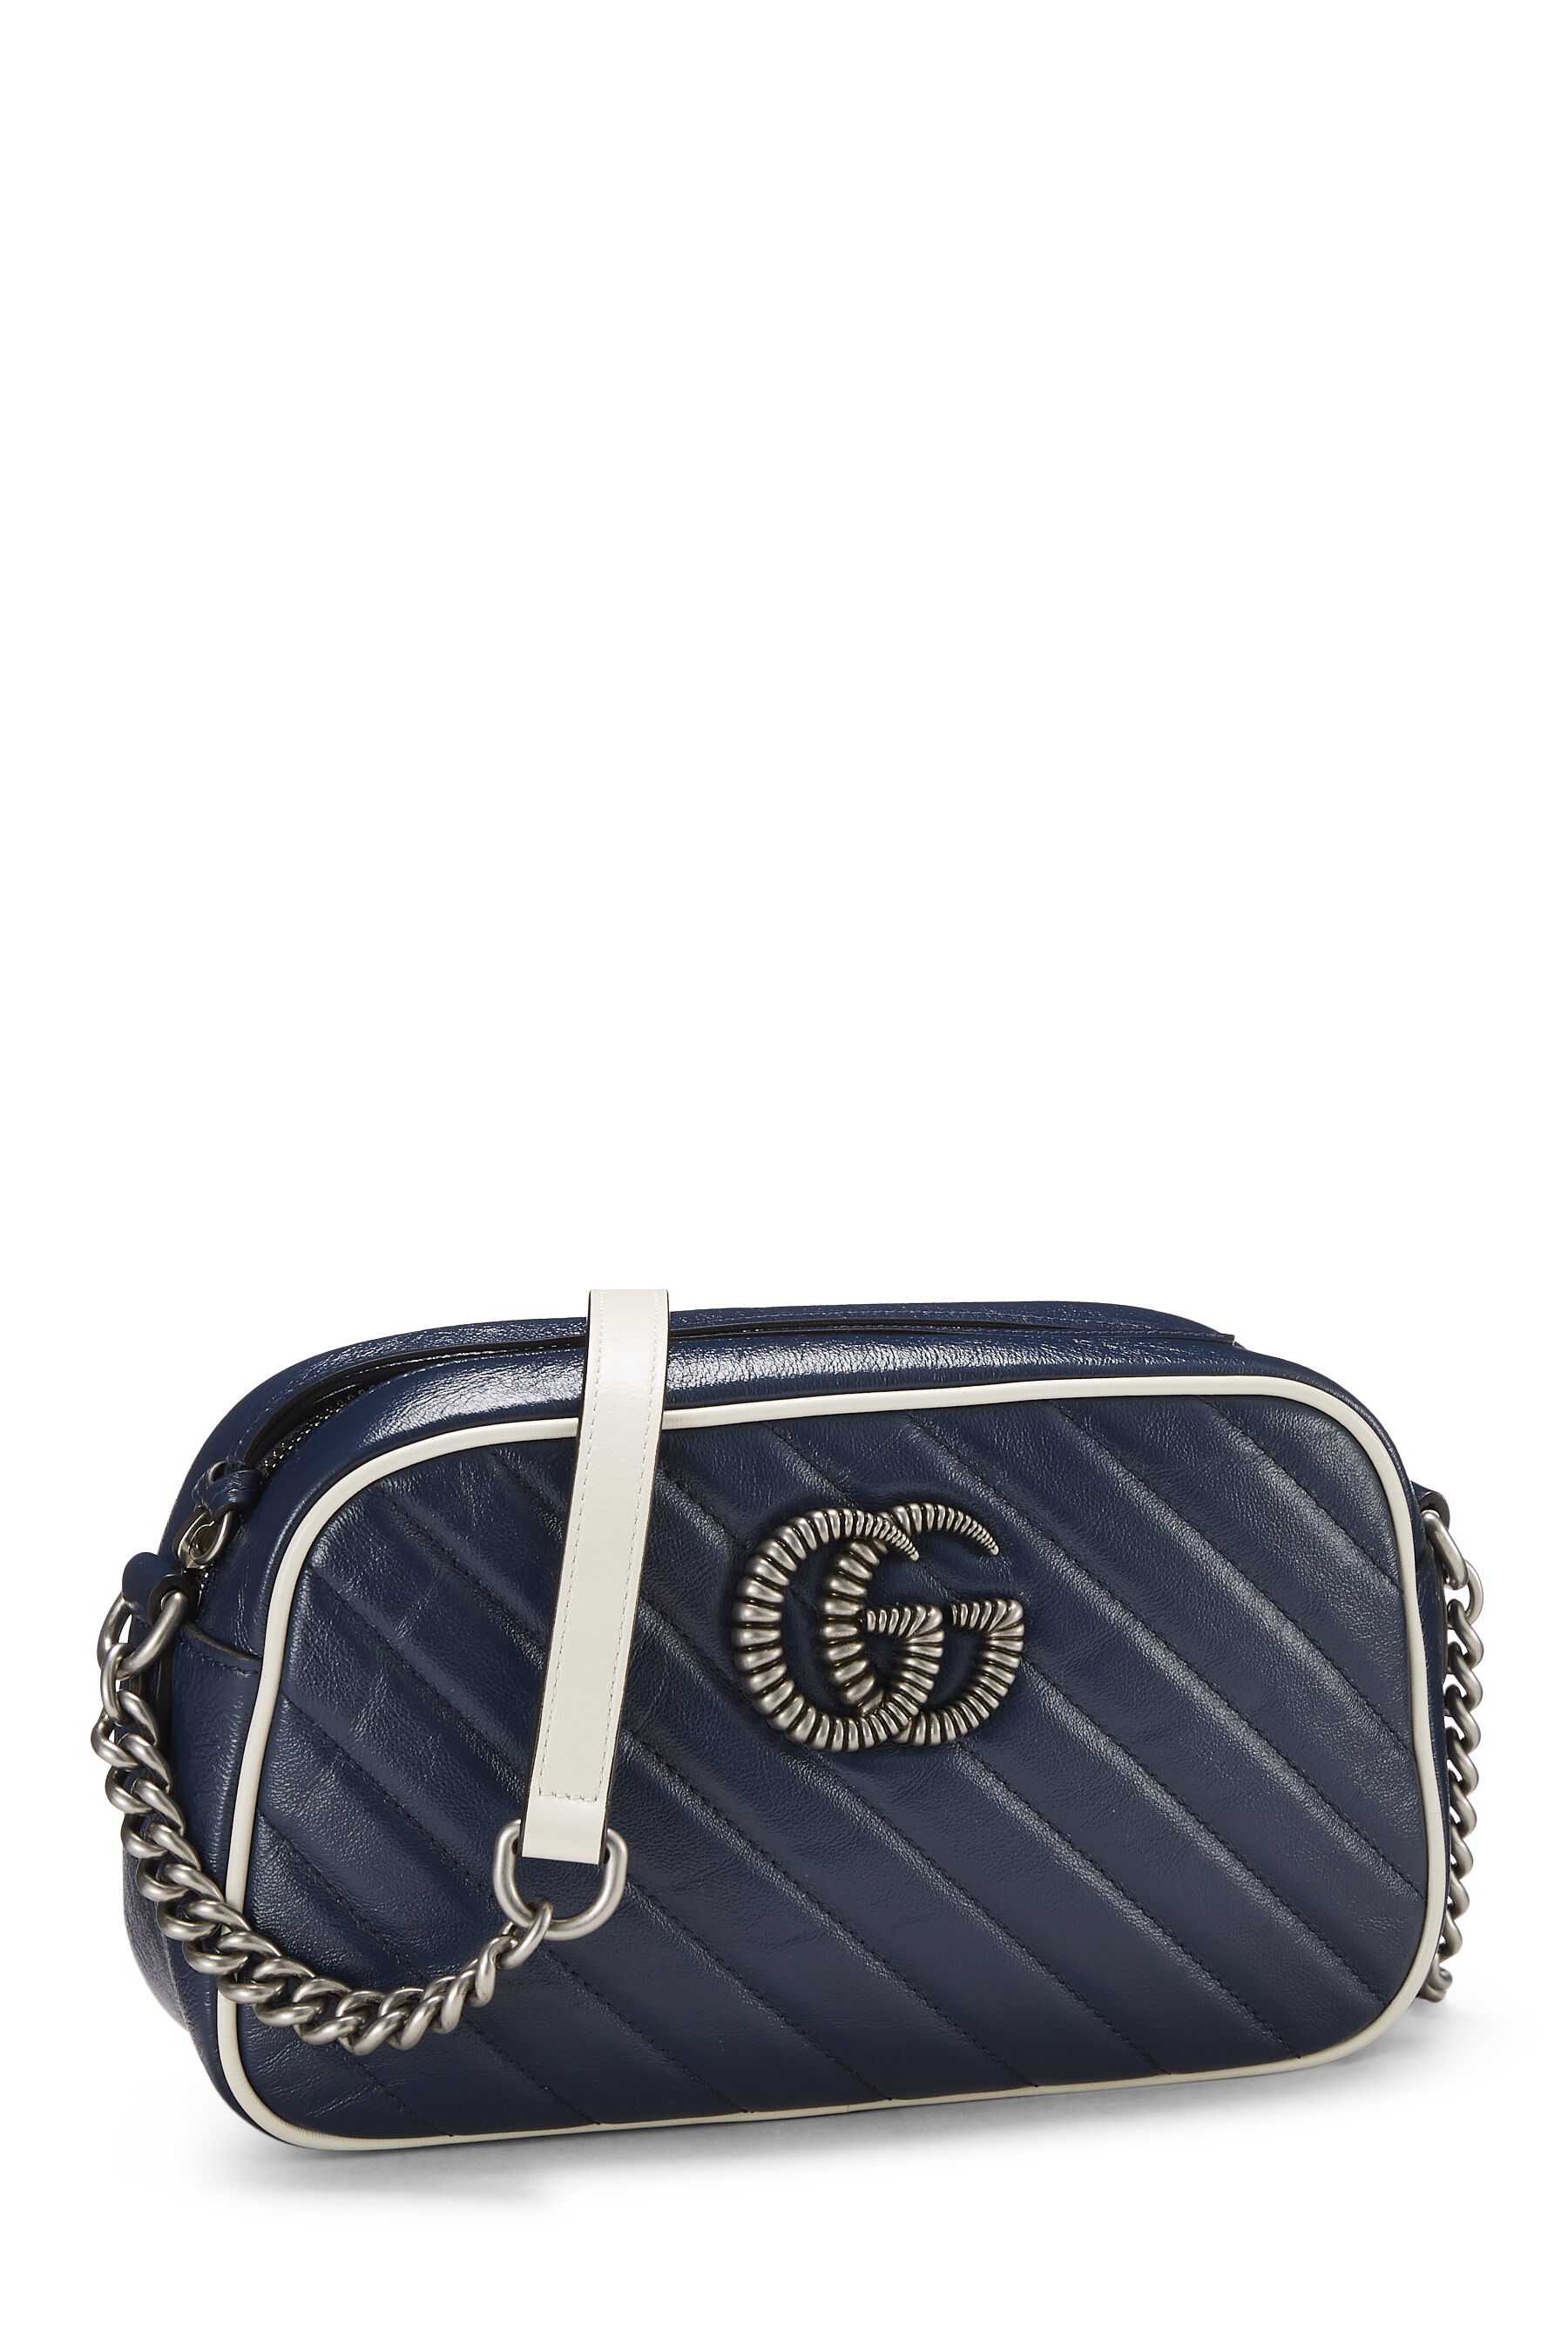 Gucci Navy Leather Torchon GG Marmont Crossbody Bag QFB3QI1LNH007